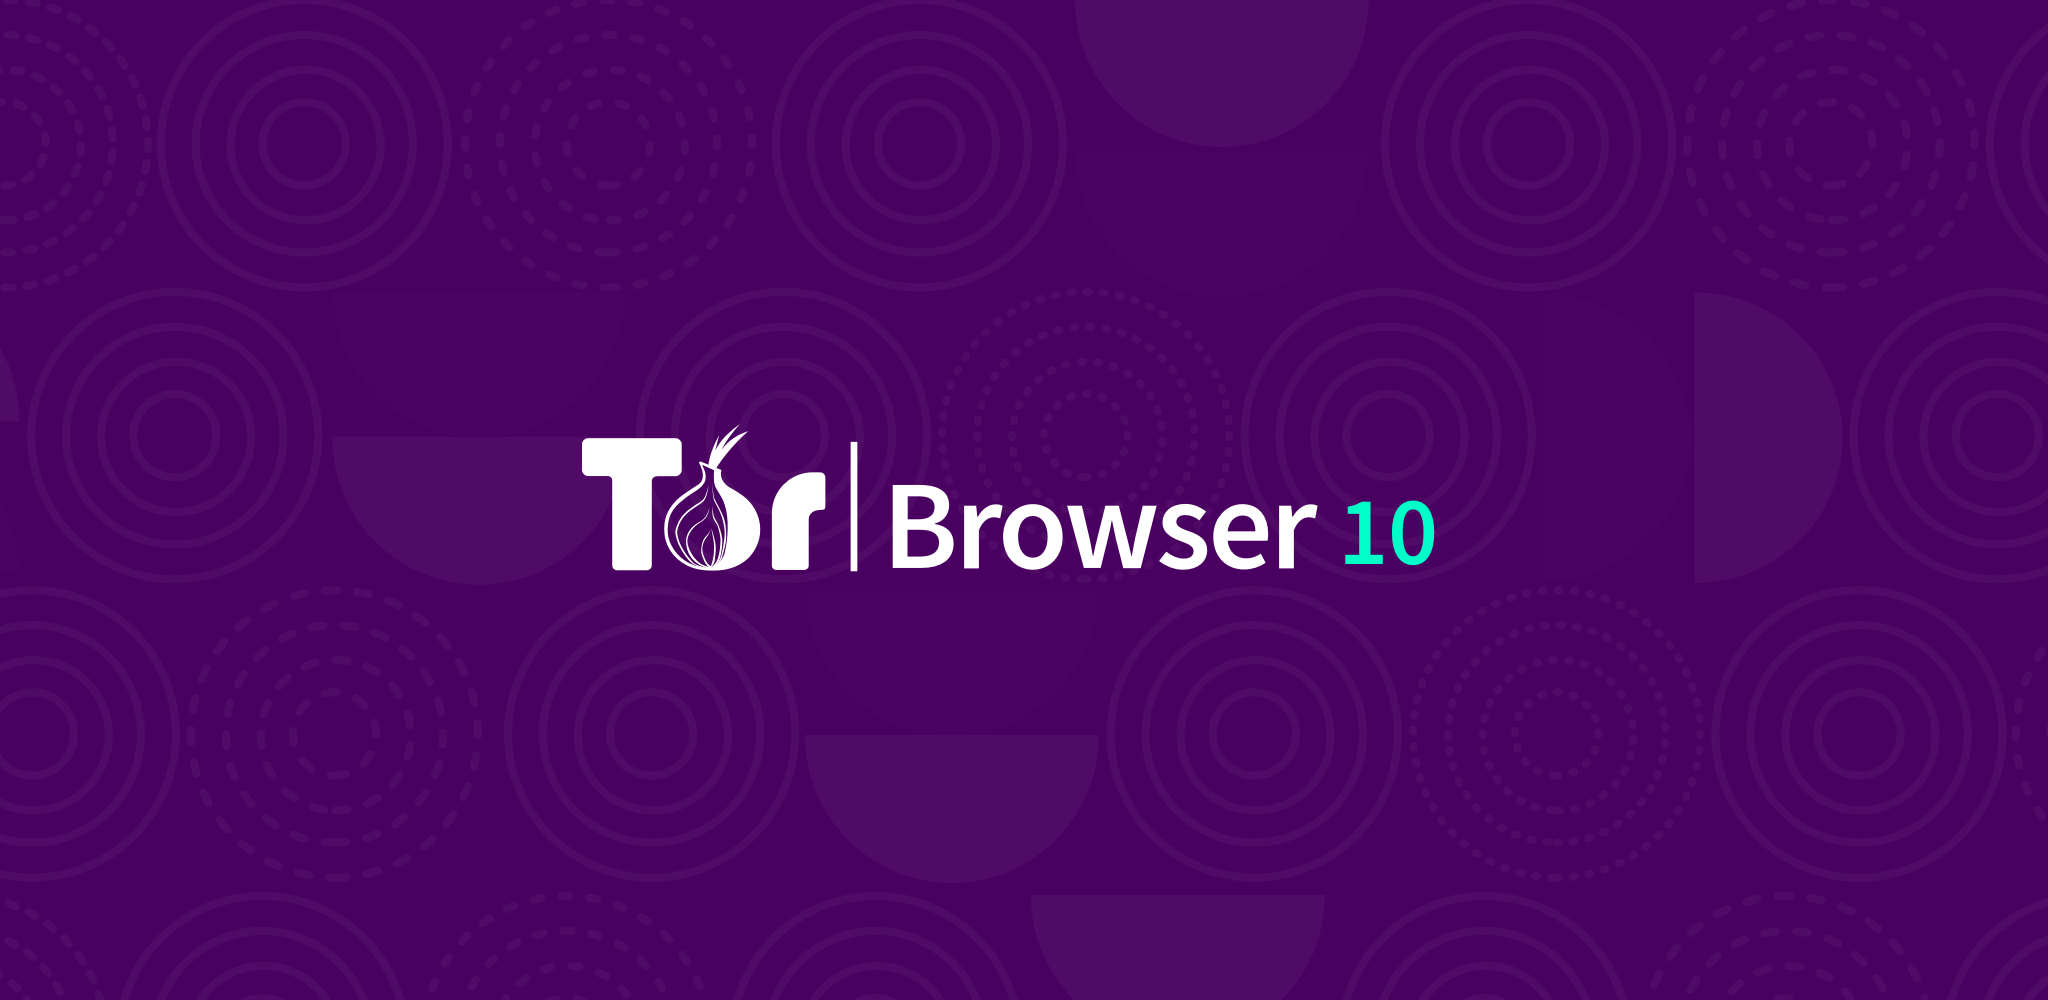 Tor browser download free windows mega что делать если не работает браузер тор mega2web